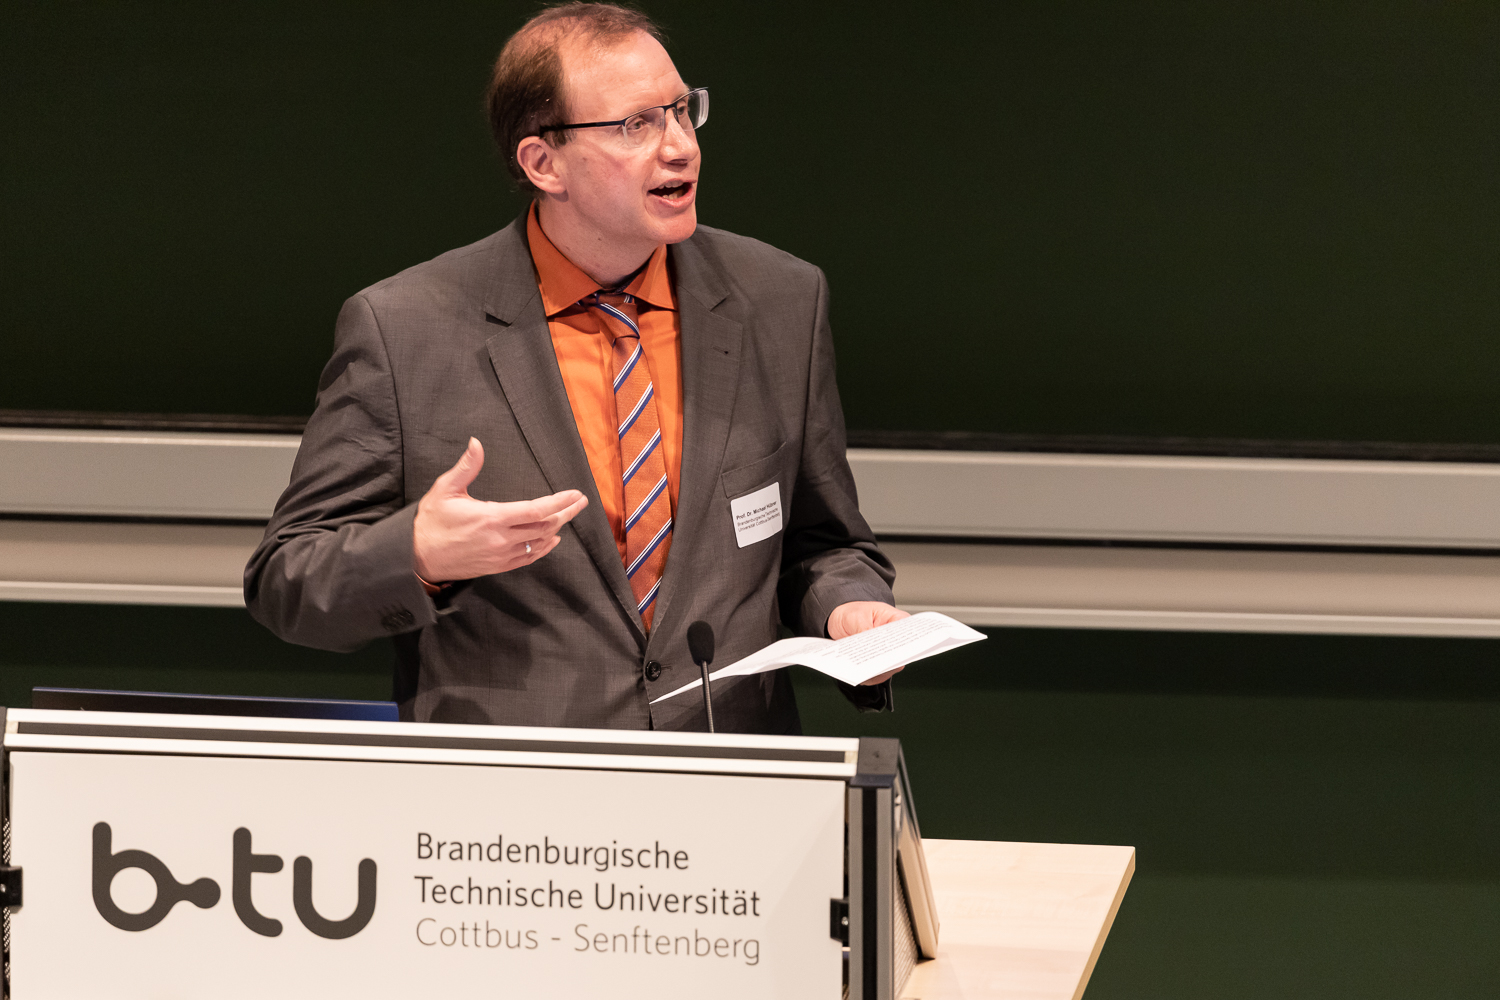 Bild: Das Bild zeigt die Eröffnungsrede von Prof. Dr. Michael Hübner, dem Vizepräsidenten für Forschung und Transfer der BTU Cottbus.